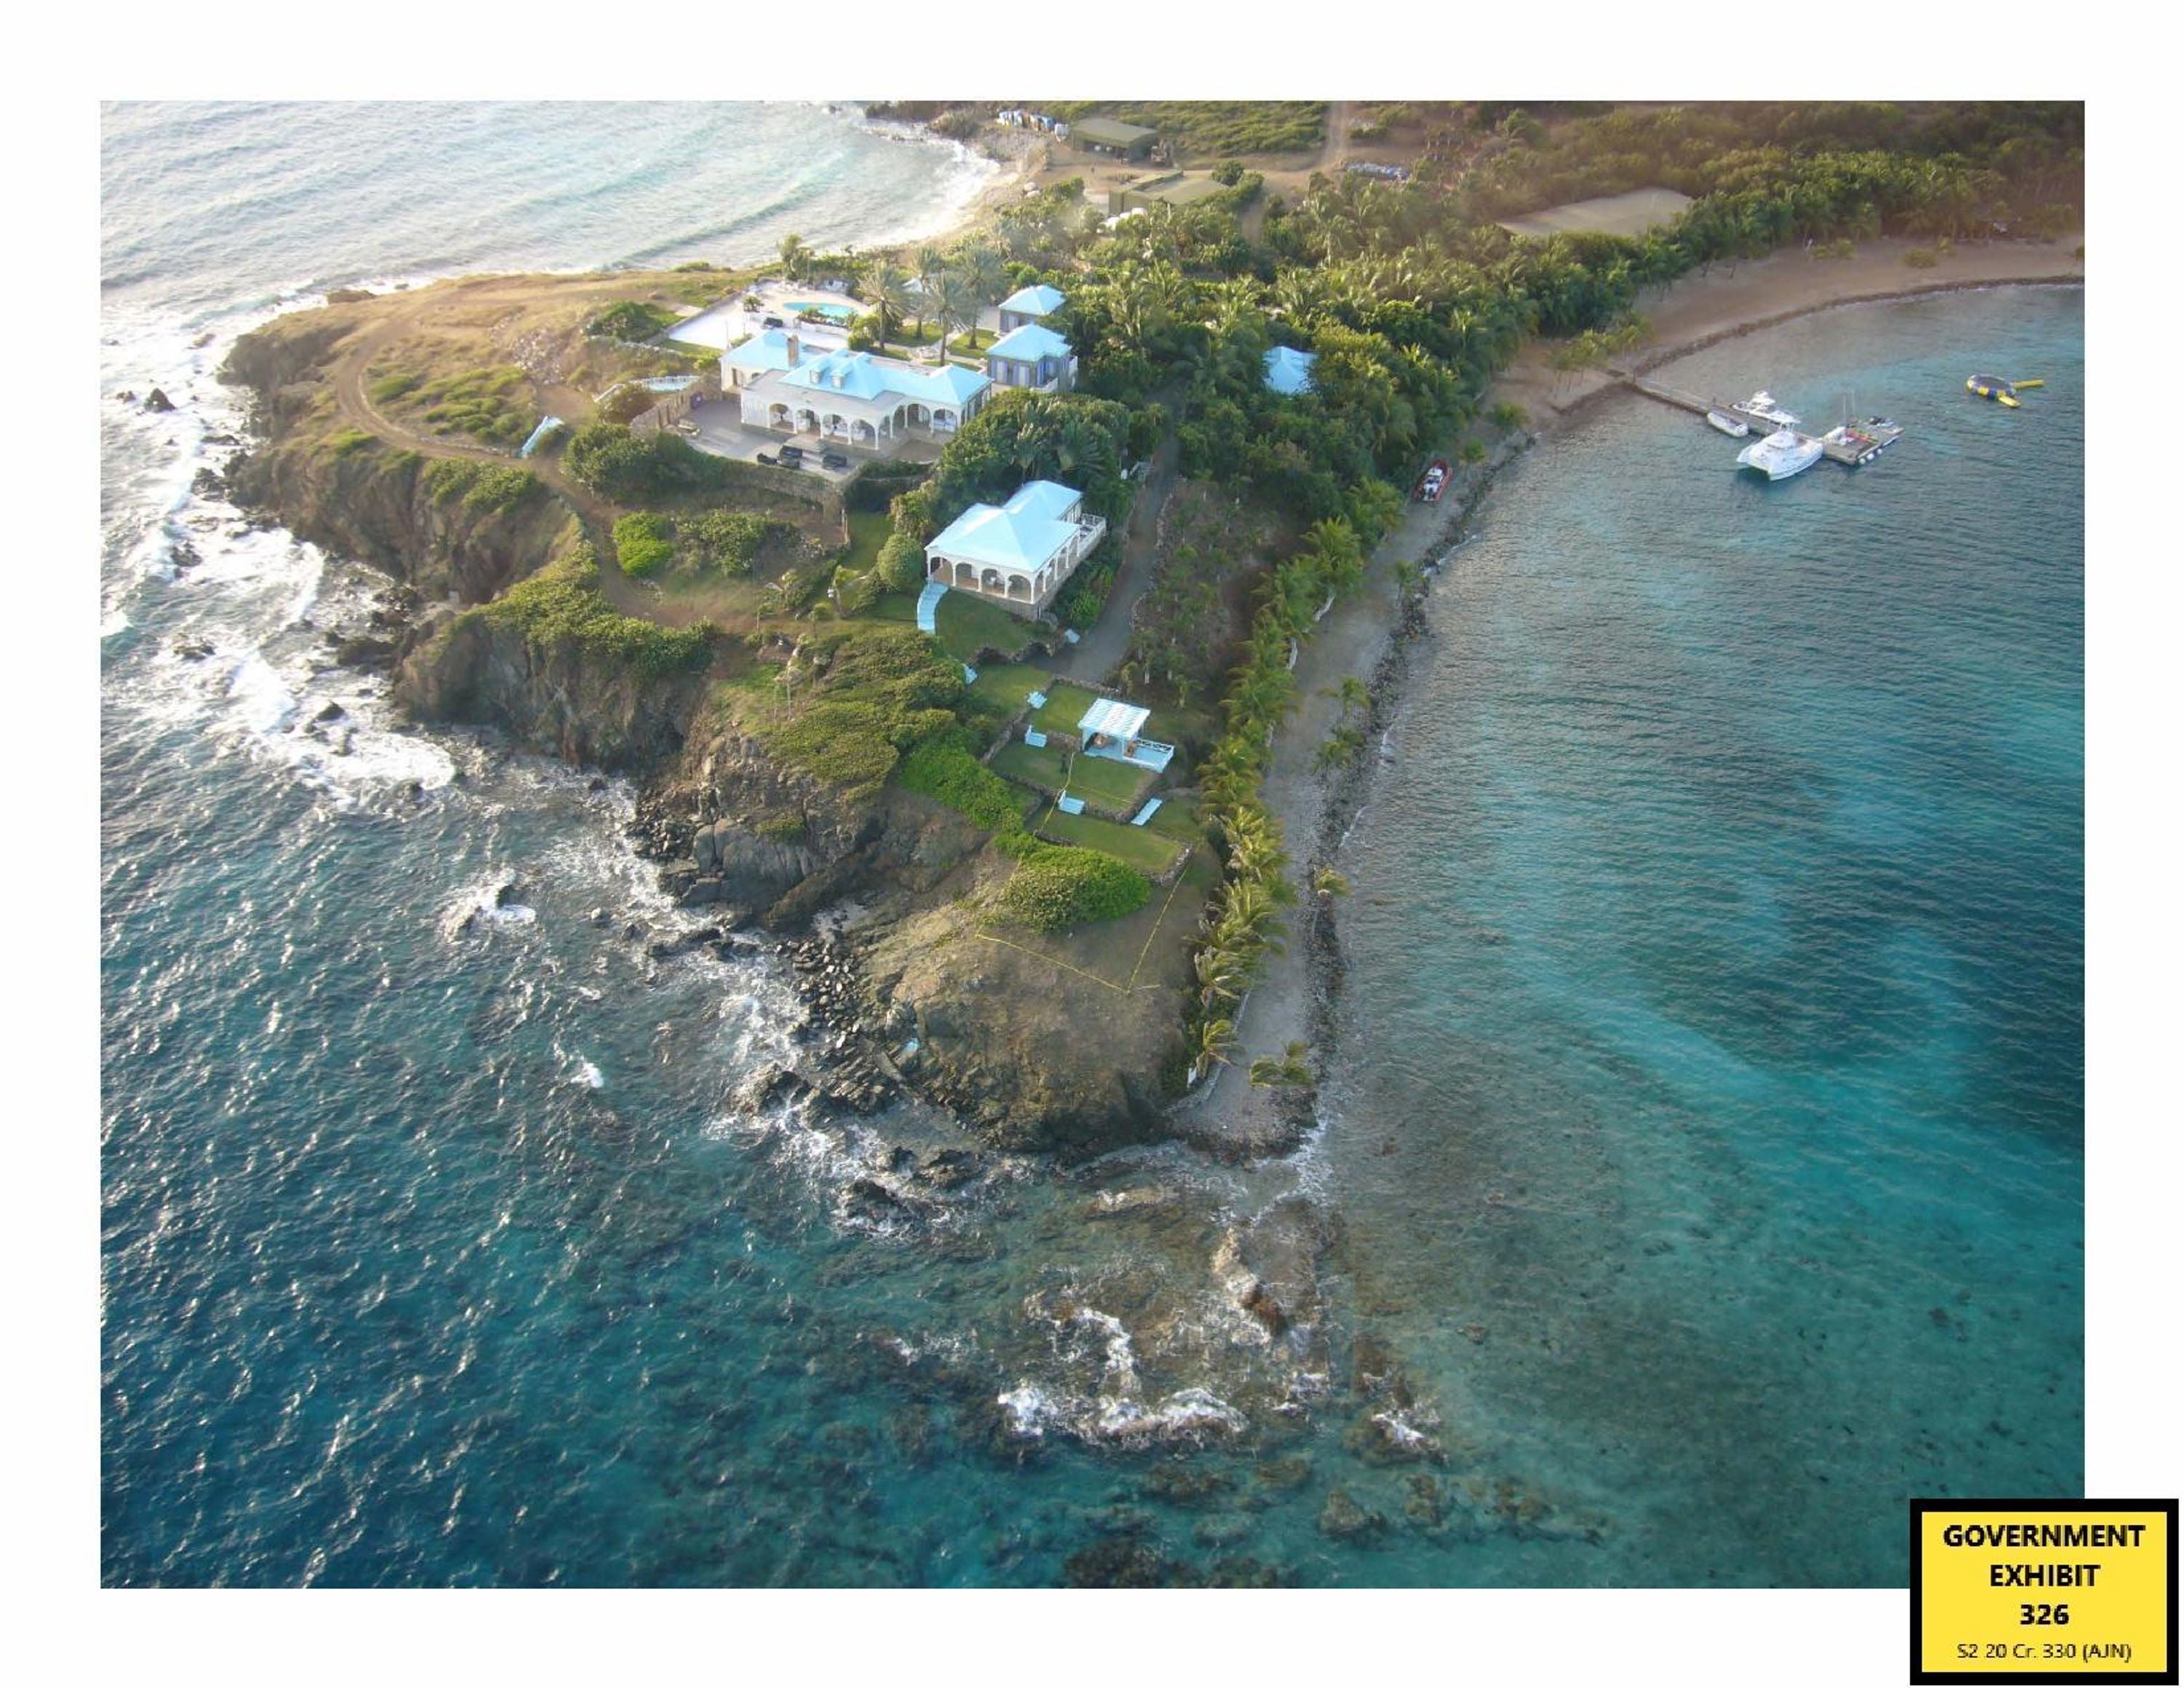 Epstein’s Caribbean island Little St James